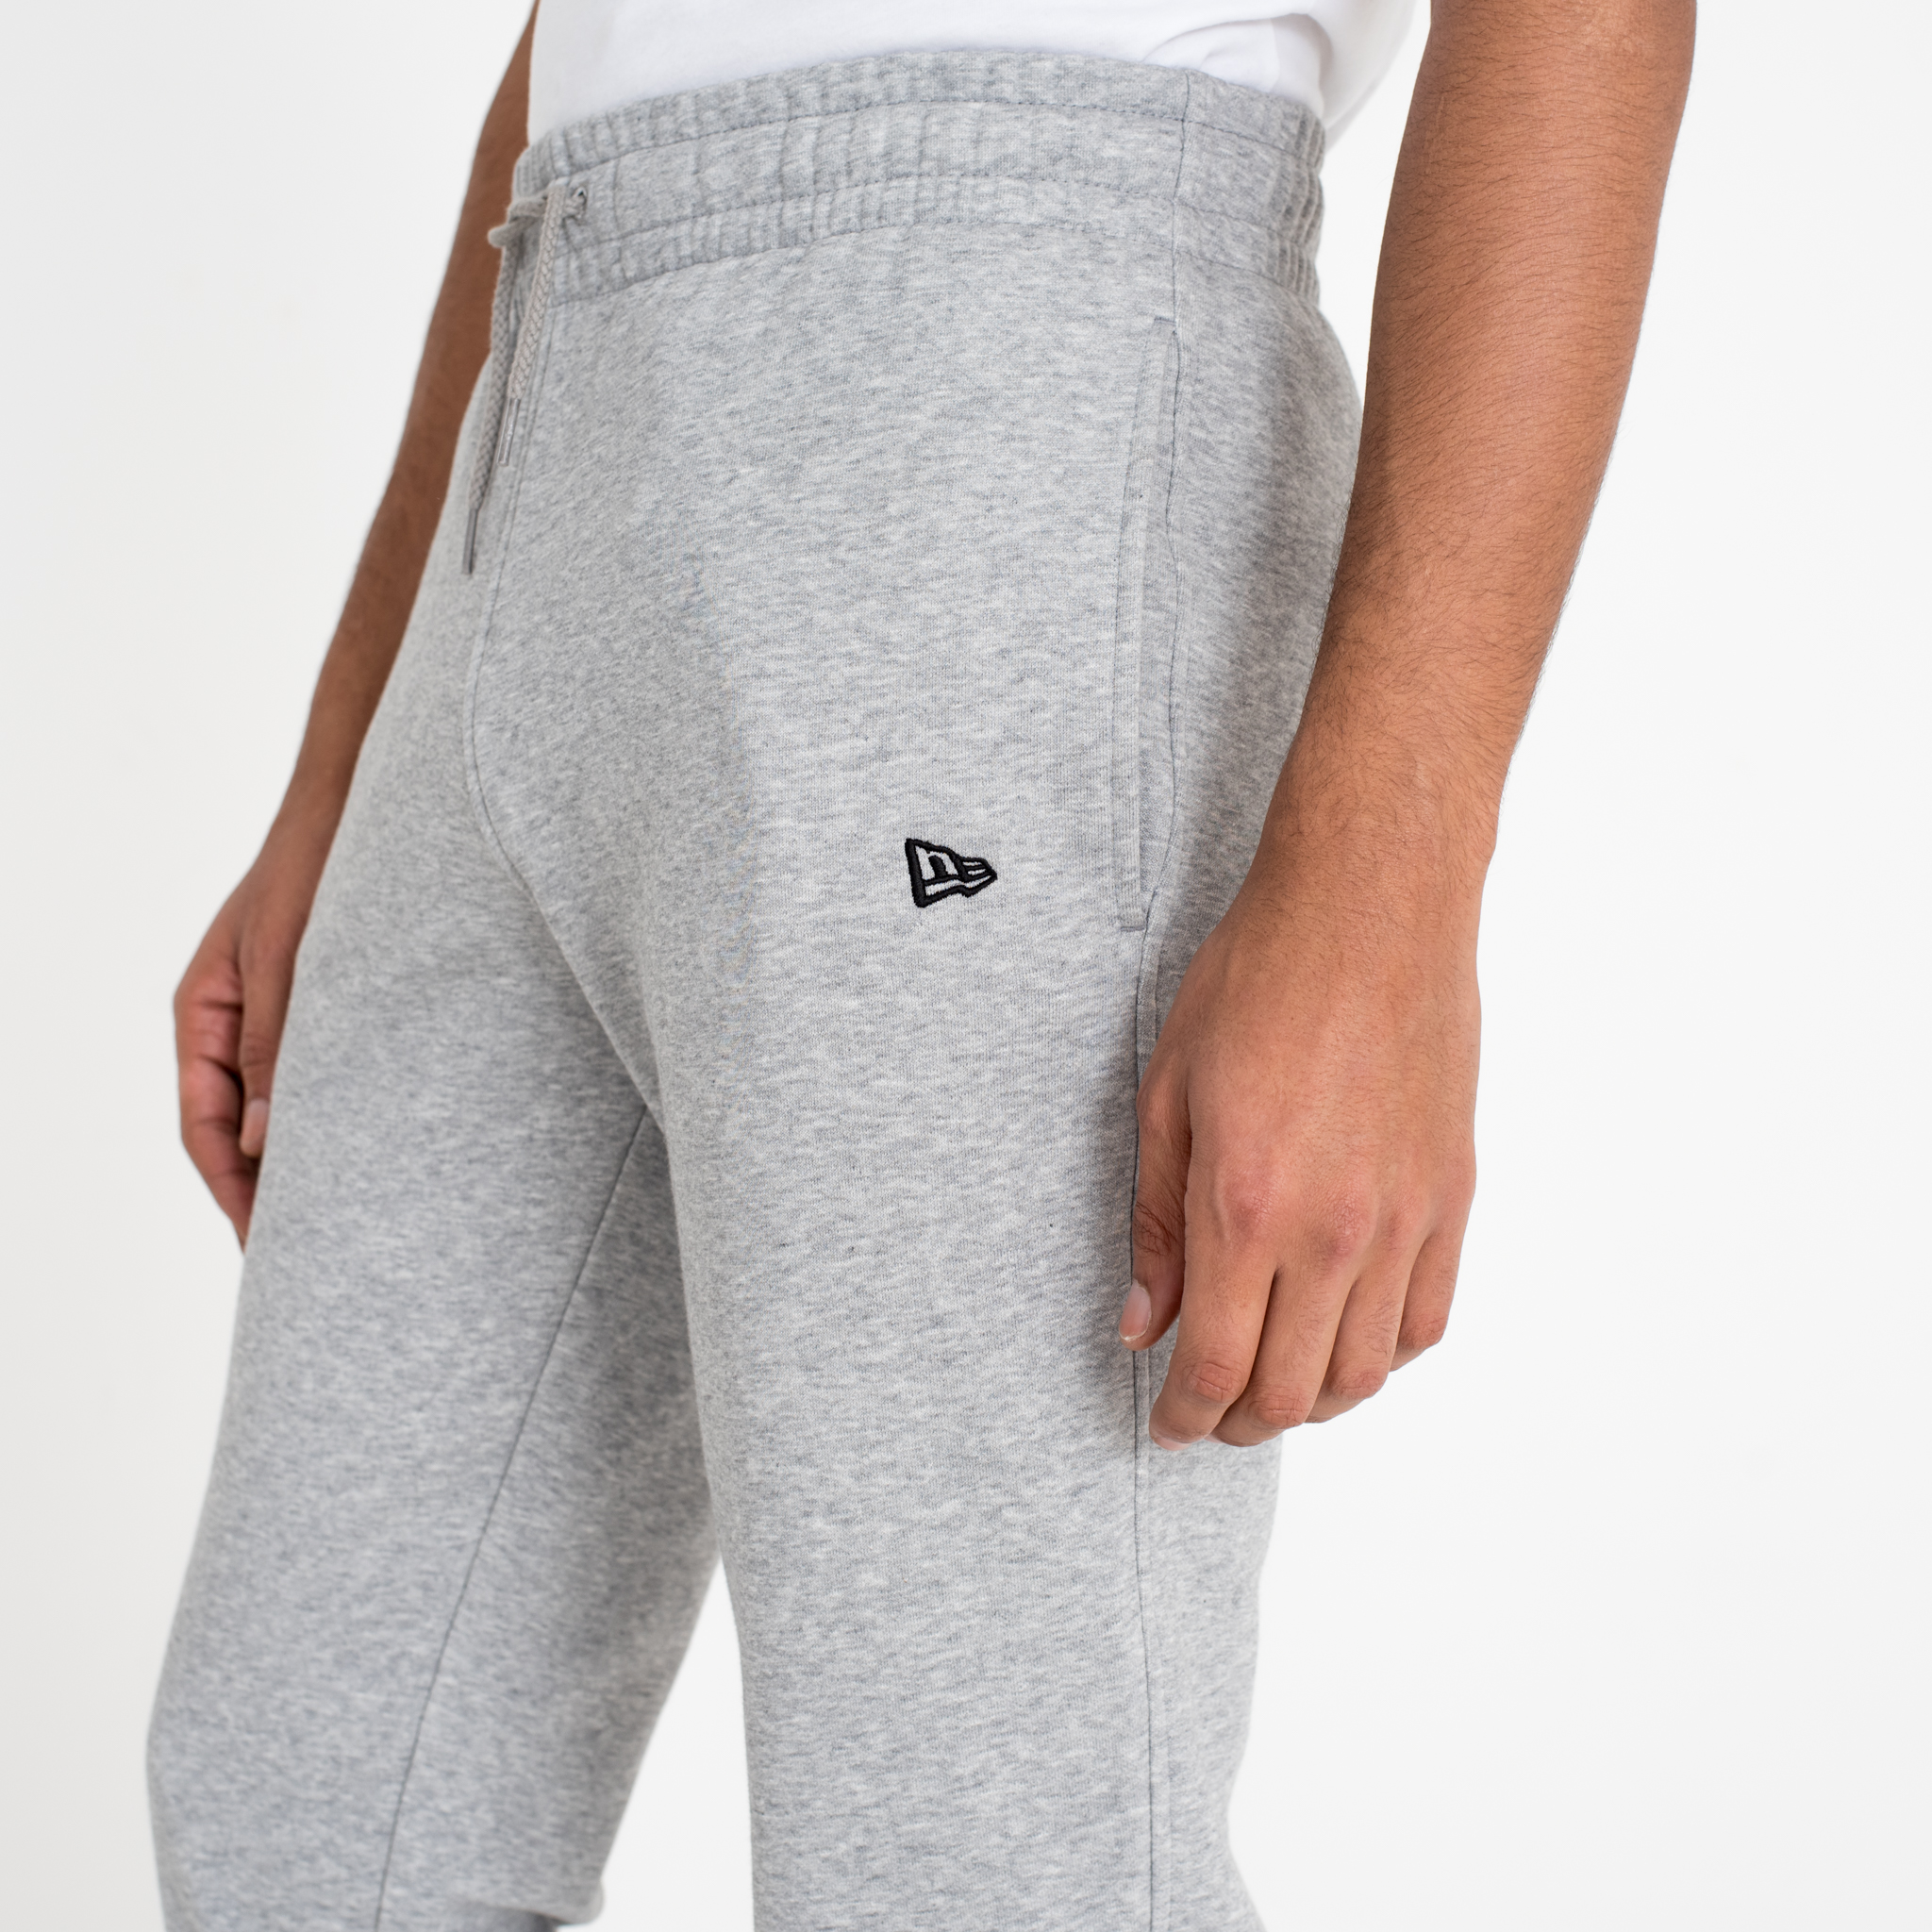 Pantalones de chándal con logotipo del escudo de la NFL, gris